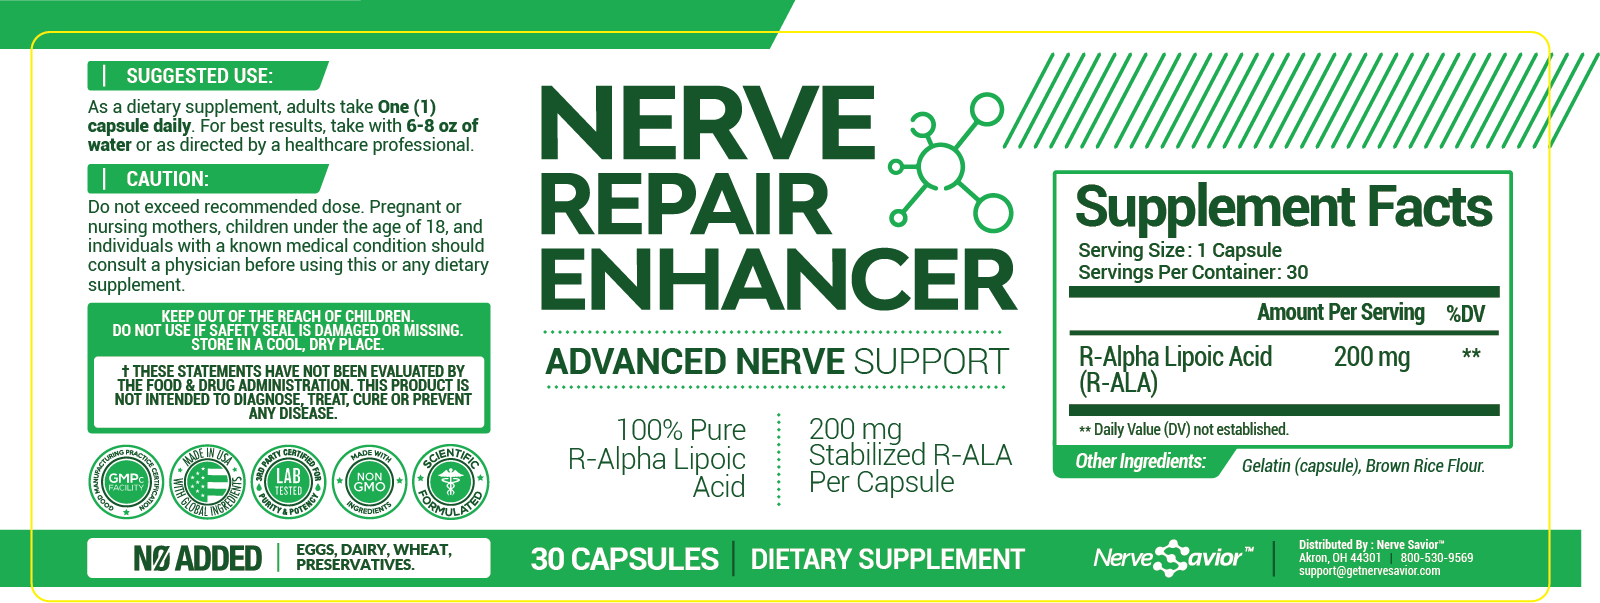 Nerve Repair Enhancer Ingredients